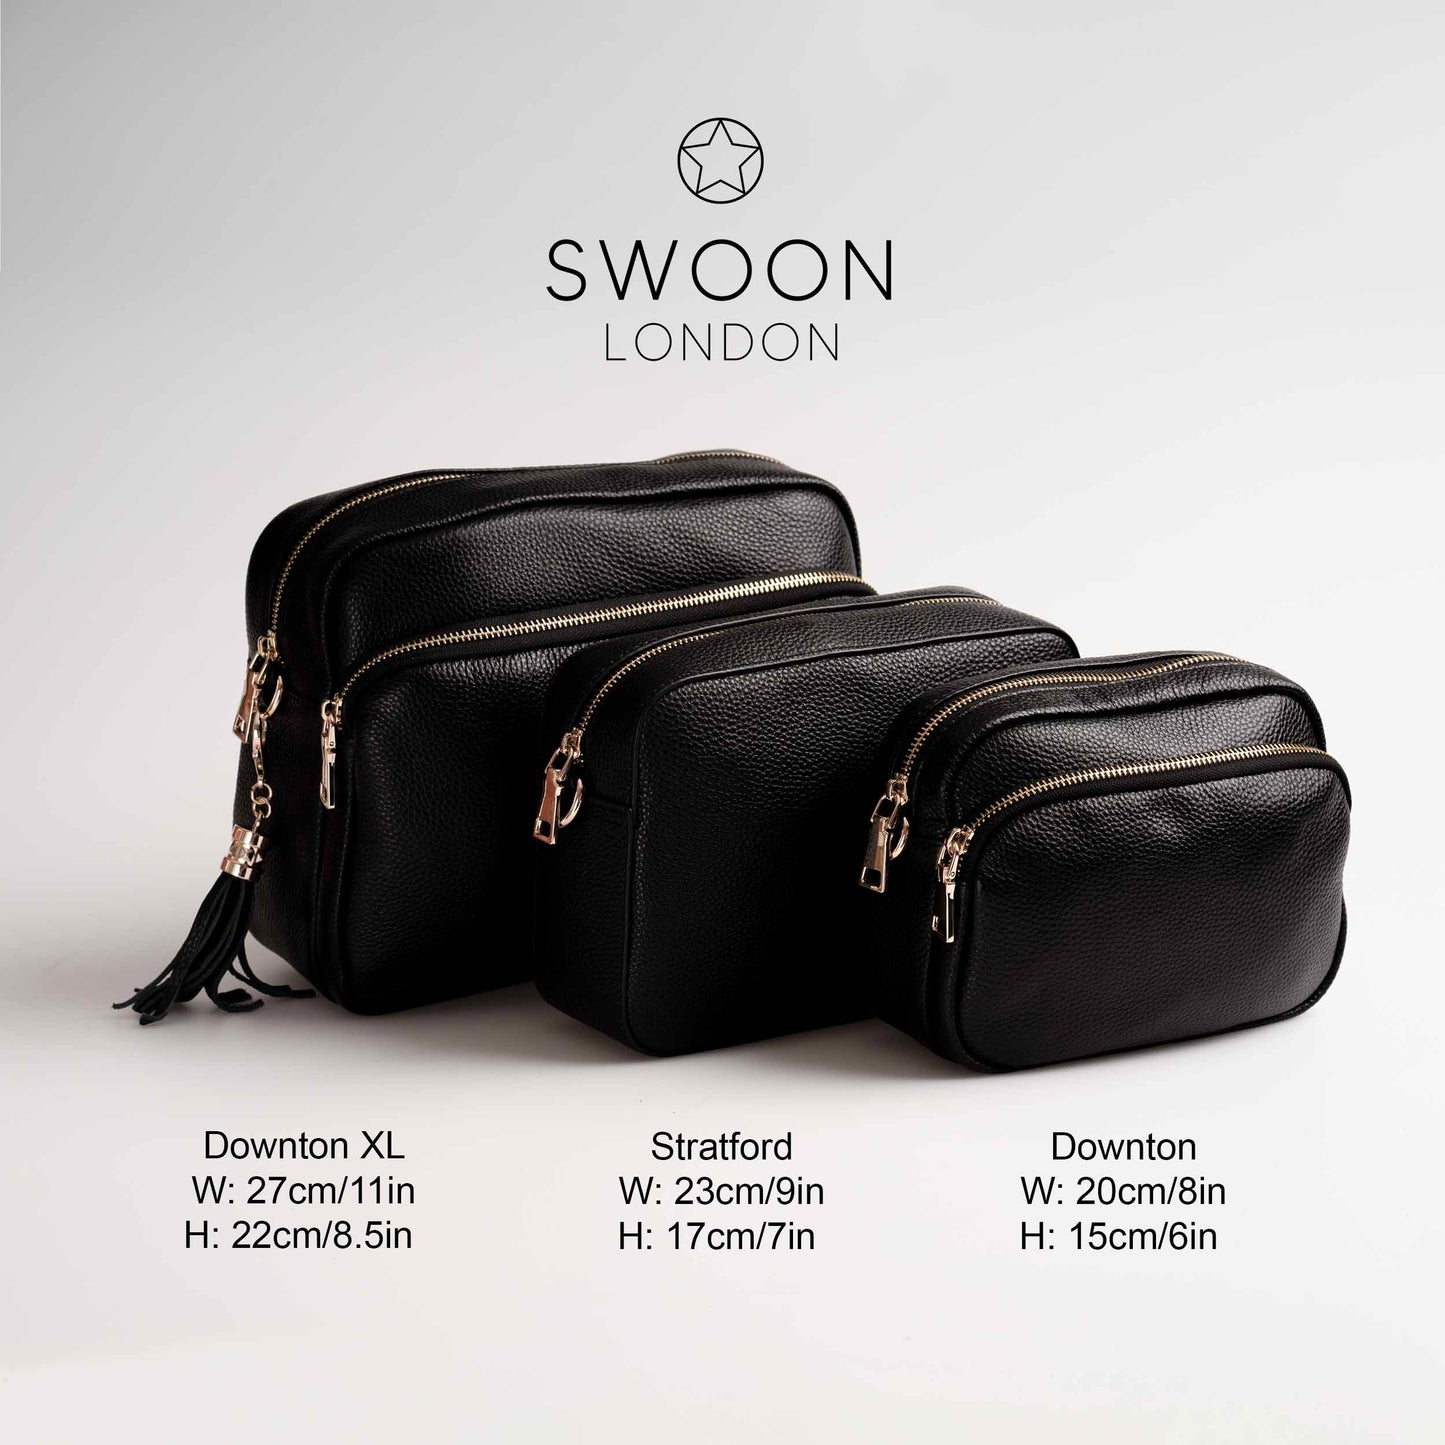 Swoon London Bag Size Comparison